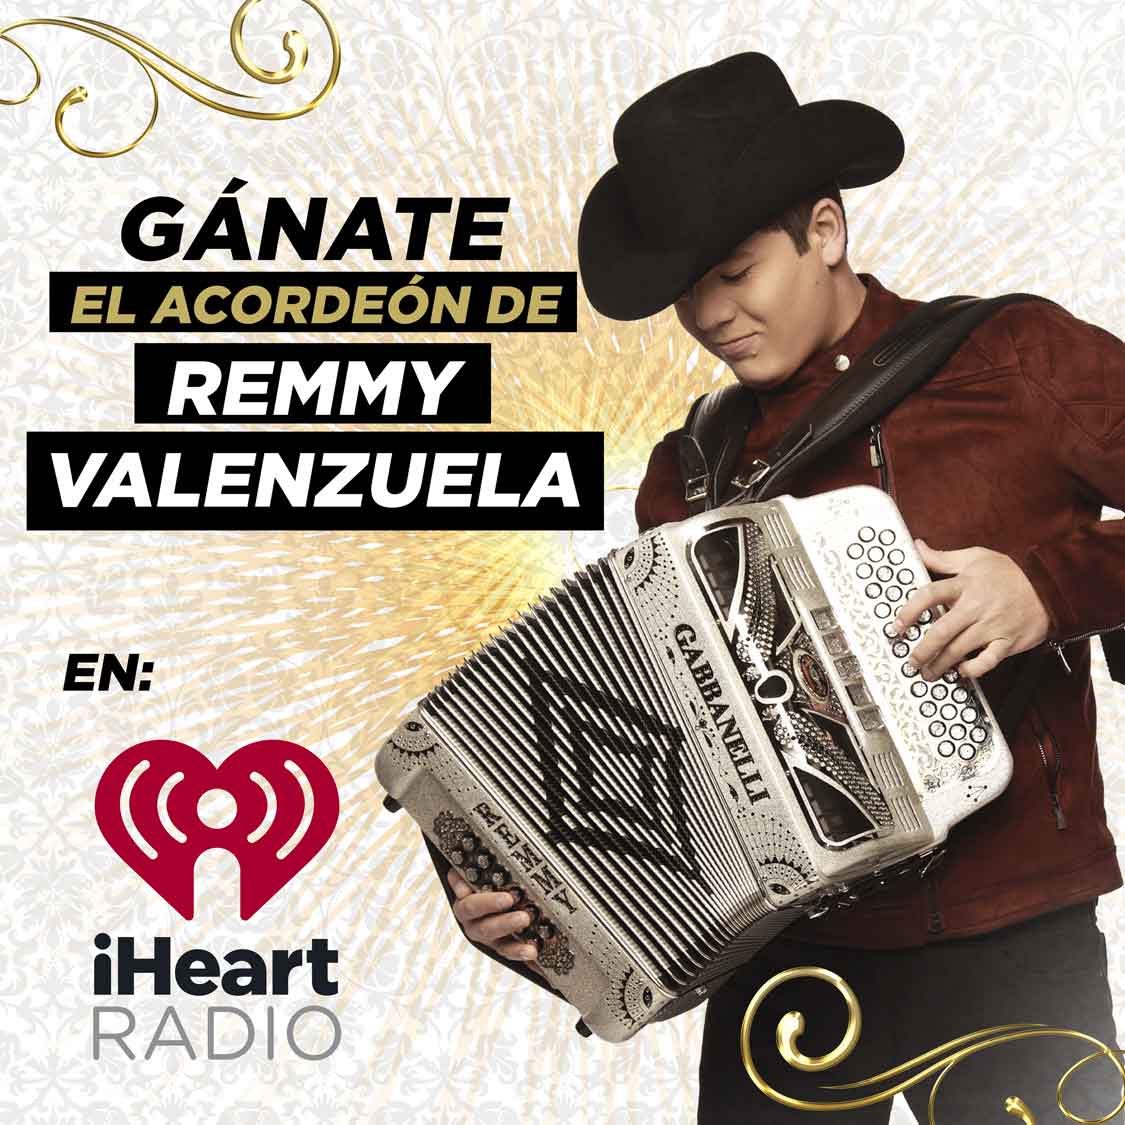 Compita de Culiacán le gustaría ganarse el acordeón de Remmy Valenzuela? |  La Comadre | Puros Éxitos!!!